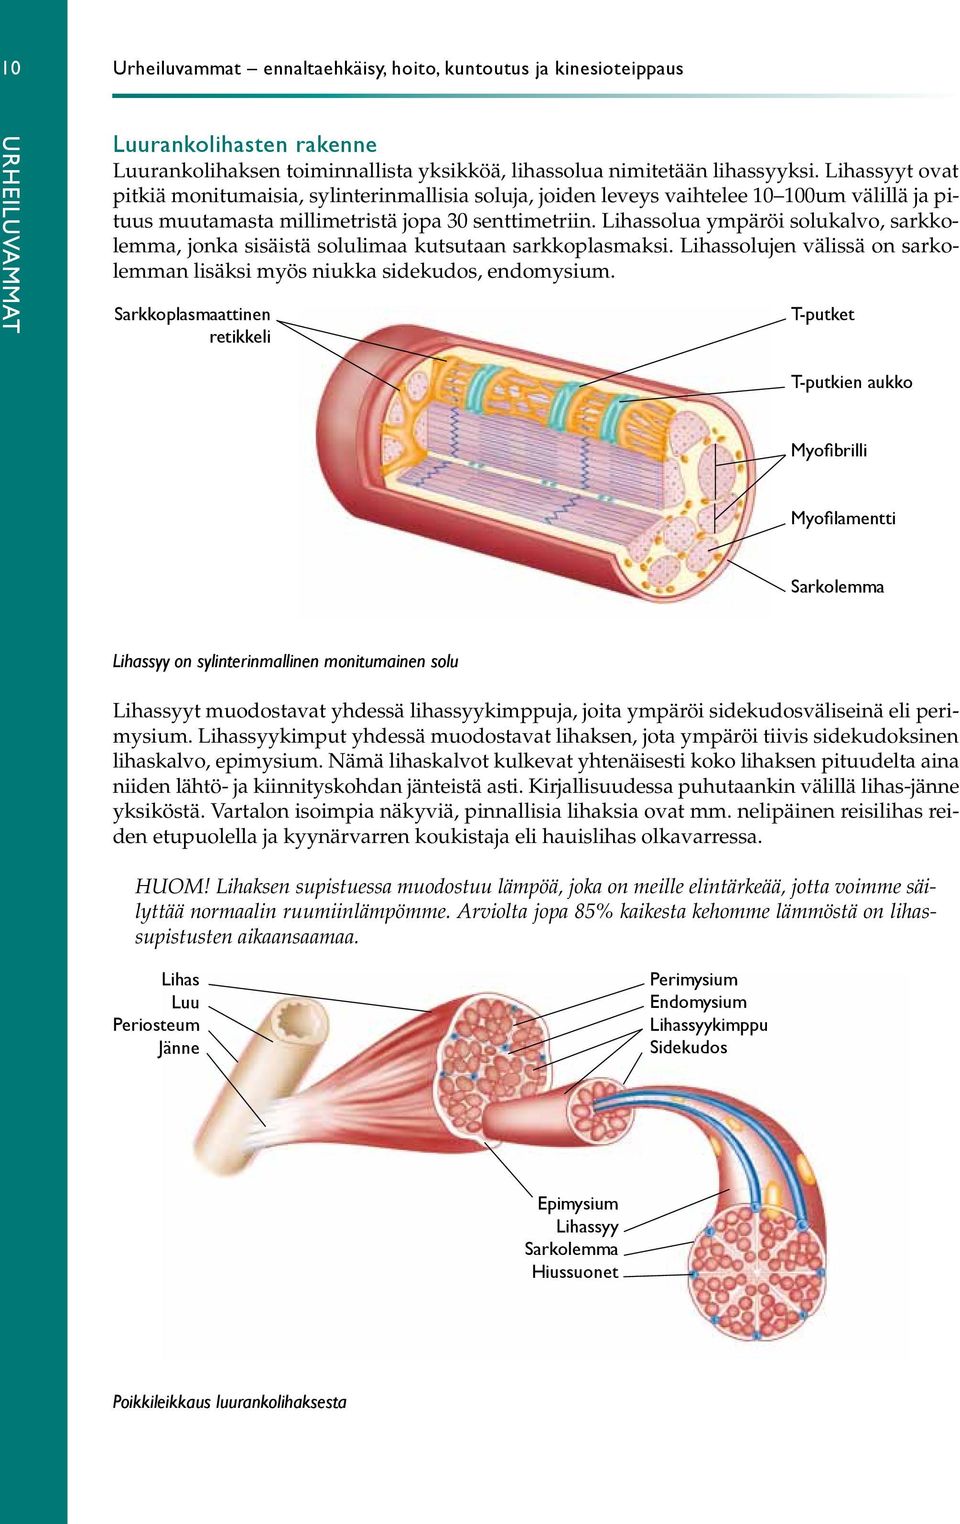 Lihassolua ympäröi solukalvo, sarkkolemma, jonka sisäistä solulimaa kutsutaan sarkkoplasmaksi. Lihassolujen välissä on sarkolemman lisäksi myös niukka sidekudos, endomysium.